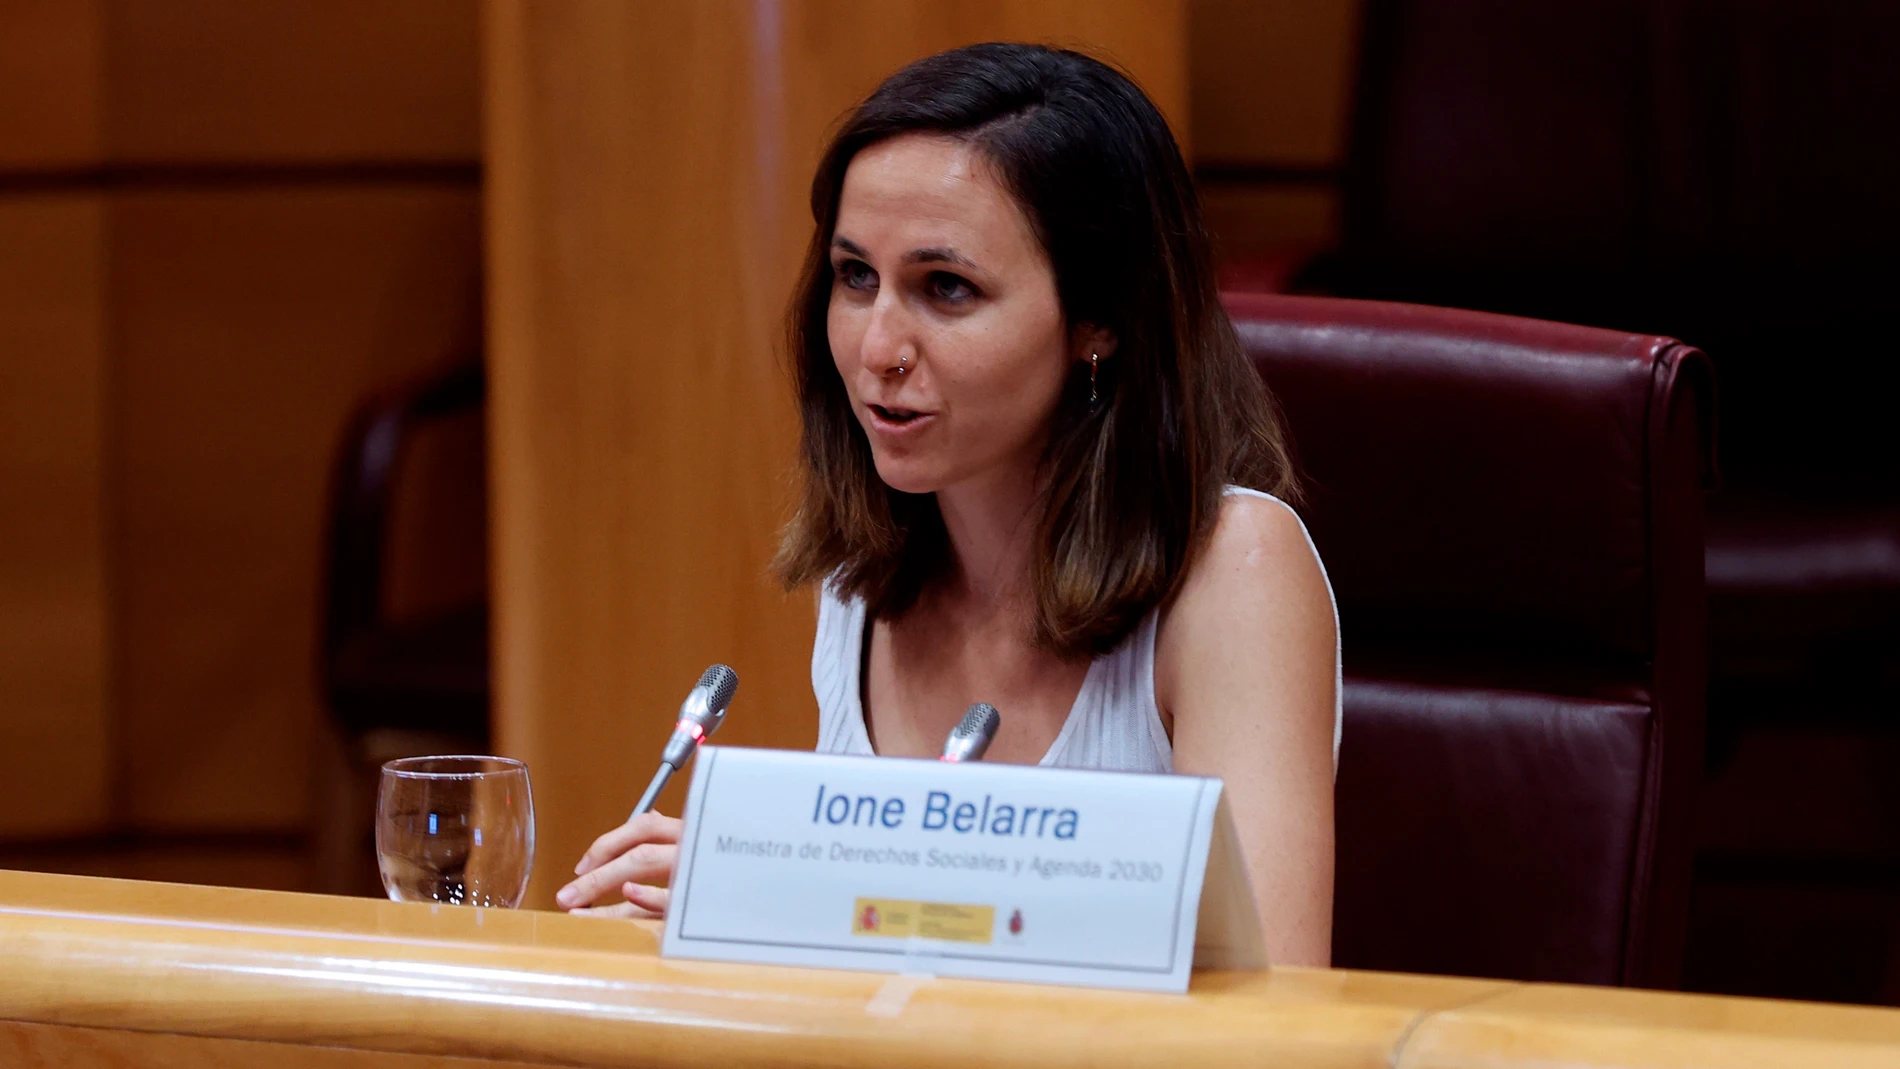 La ministra de Derechos Sociales y Agenda 2030, Ione Belarra, hoy, durante su intervención en la clausura de la jornada "Las ciudades españolas ante el reto de la neutralidad climática. Presentación de CITIES 2030", que tiene lugar este miércoles en el Senado.